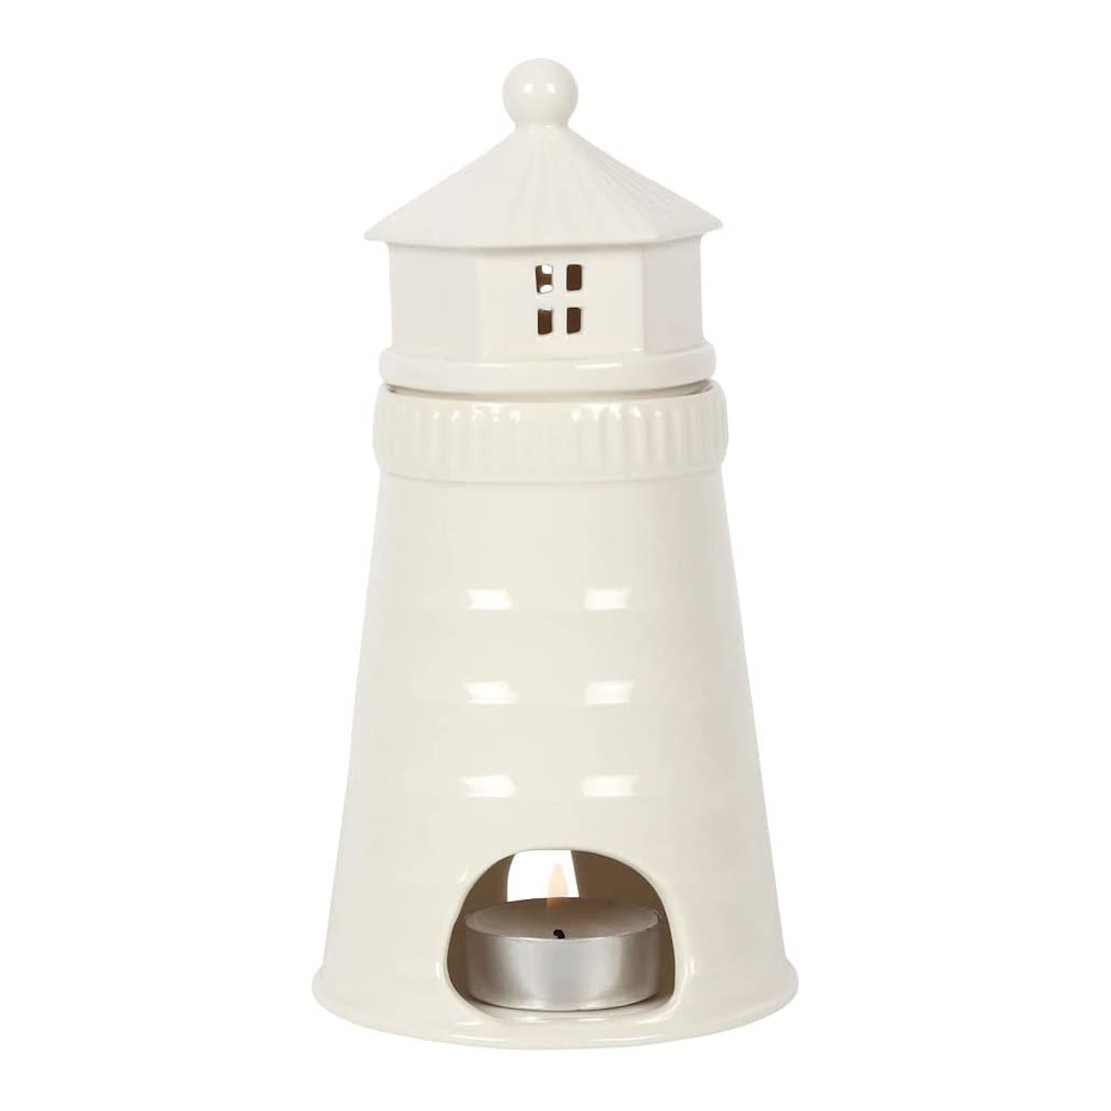 Lighthouse Fragrance Burner – White